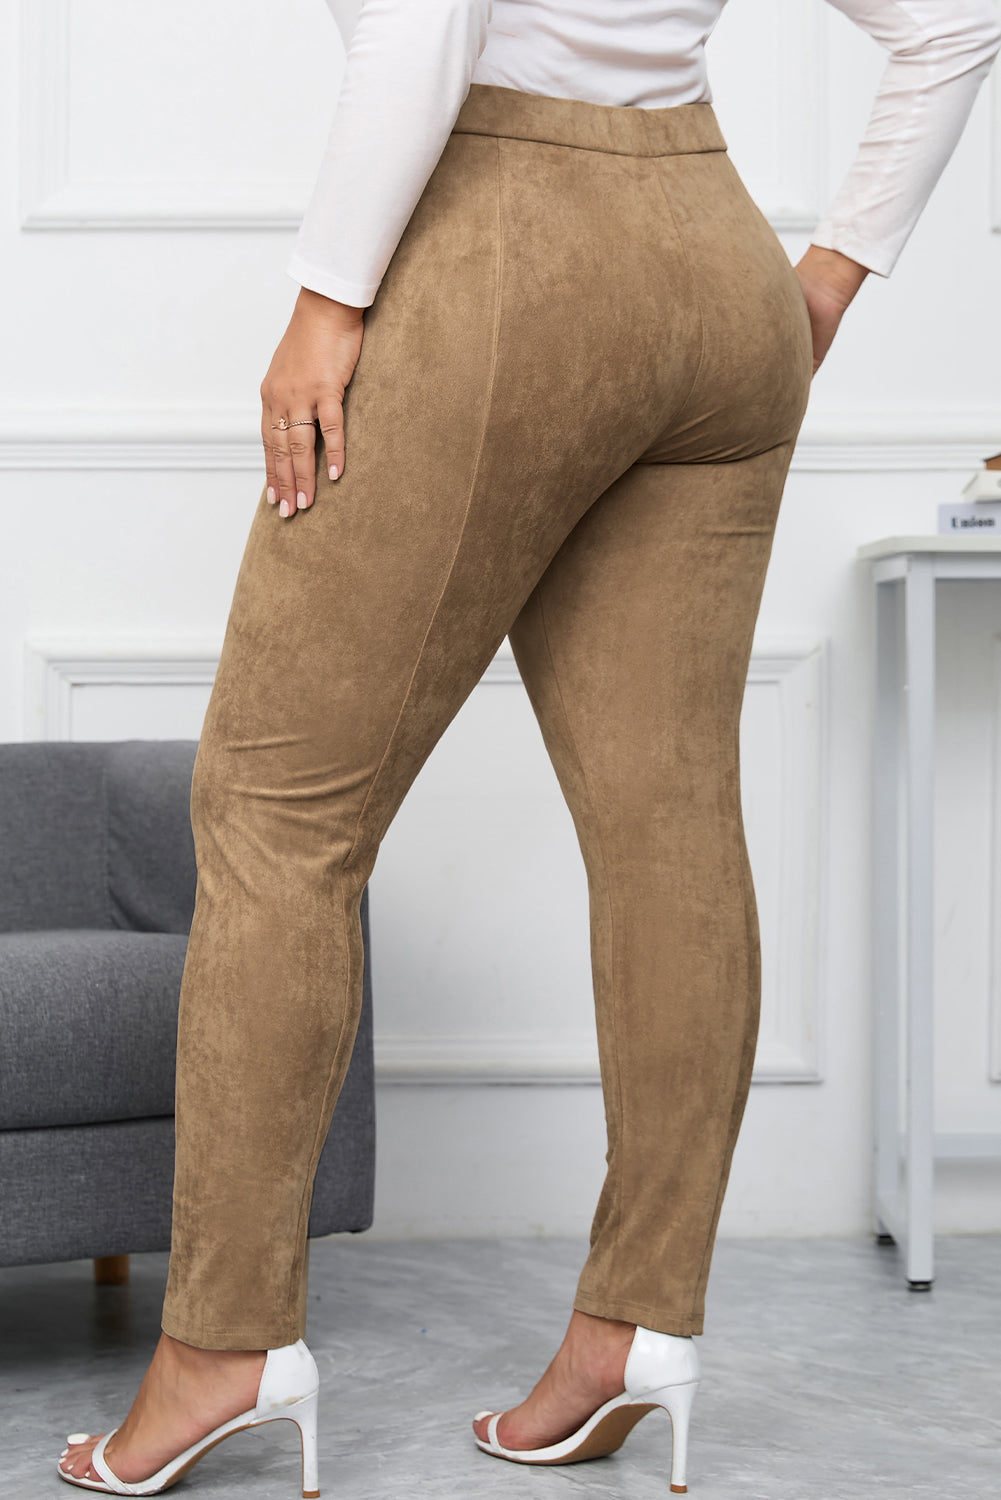 Pantaloni skinny in pelle scamosciata sintetica a vita alta taglie forti color cammello